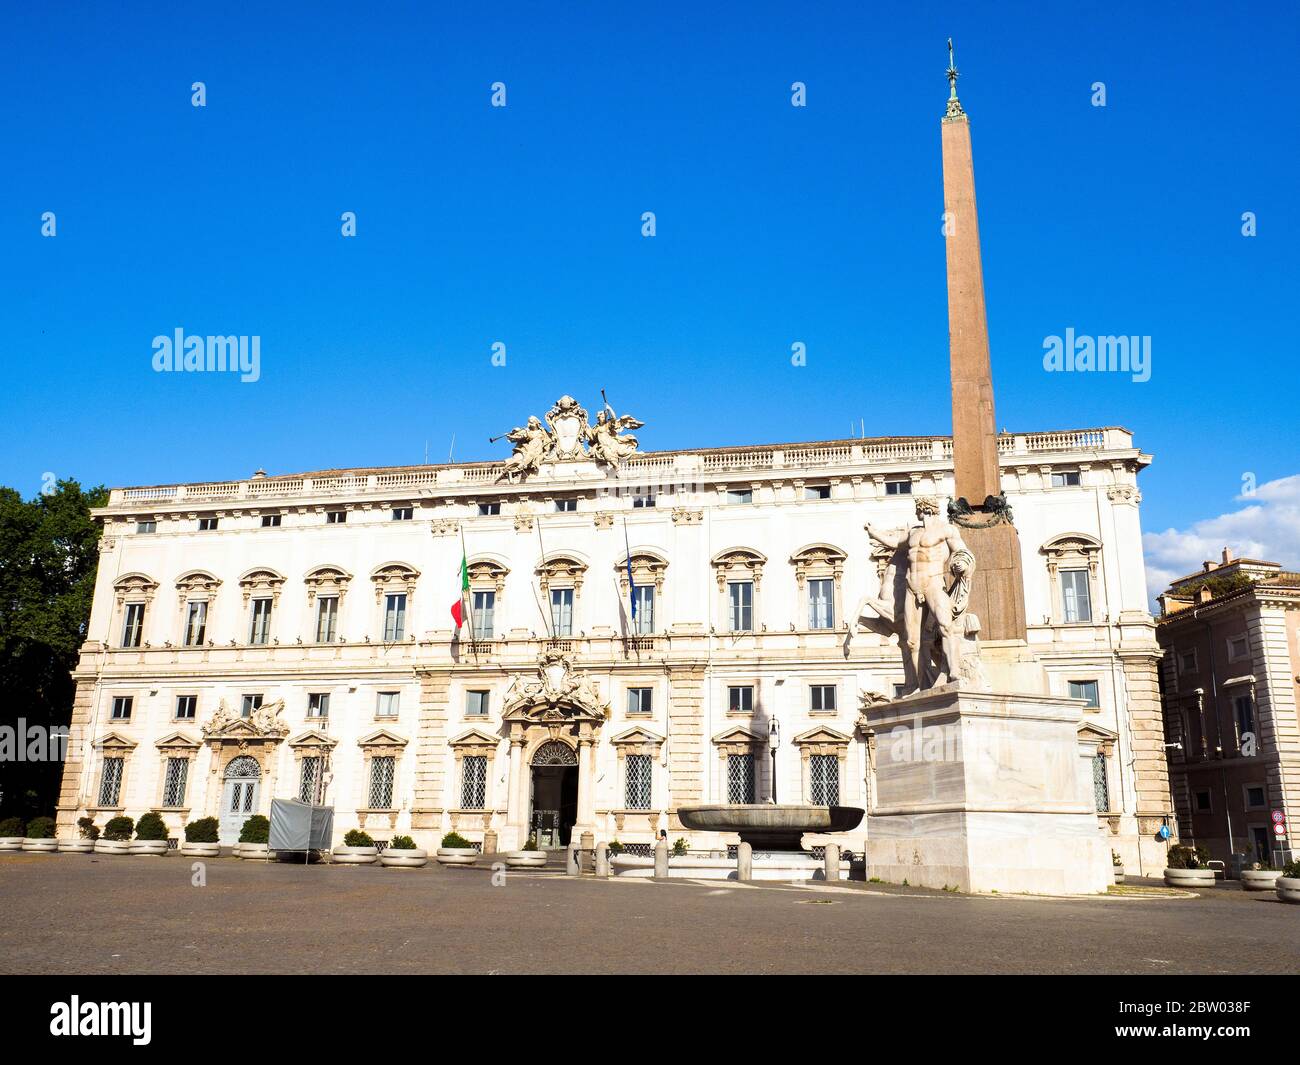 Palazzo della Consulta (erbaut 1732-1735) ist ein spätbarocker Palast im Zentrum von Rom, Italien, der seit 1955 das Verfassungsgericht der Italienischen Republik beherbergt. Es liegt gegenüber der Piazza del Quirinale von der offiziellen Residenz des Präsidenten der Italienischen Republik, dem Quirinal Palace Stockfoto